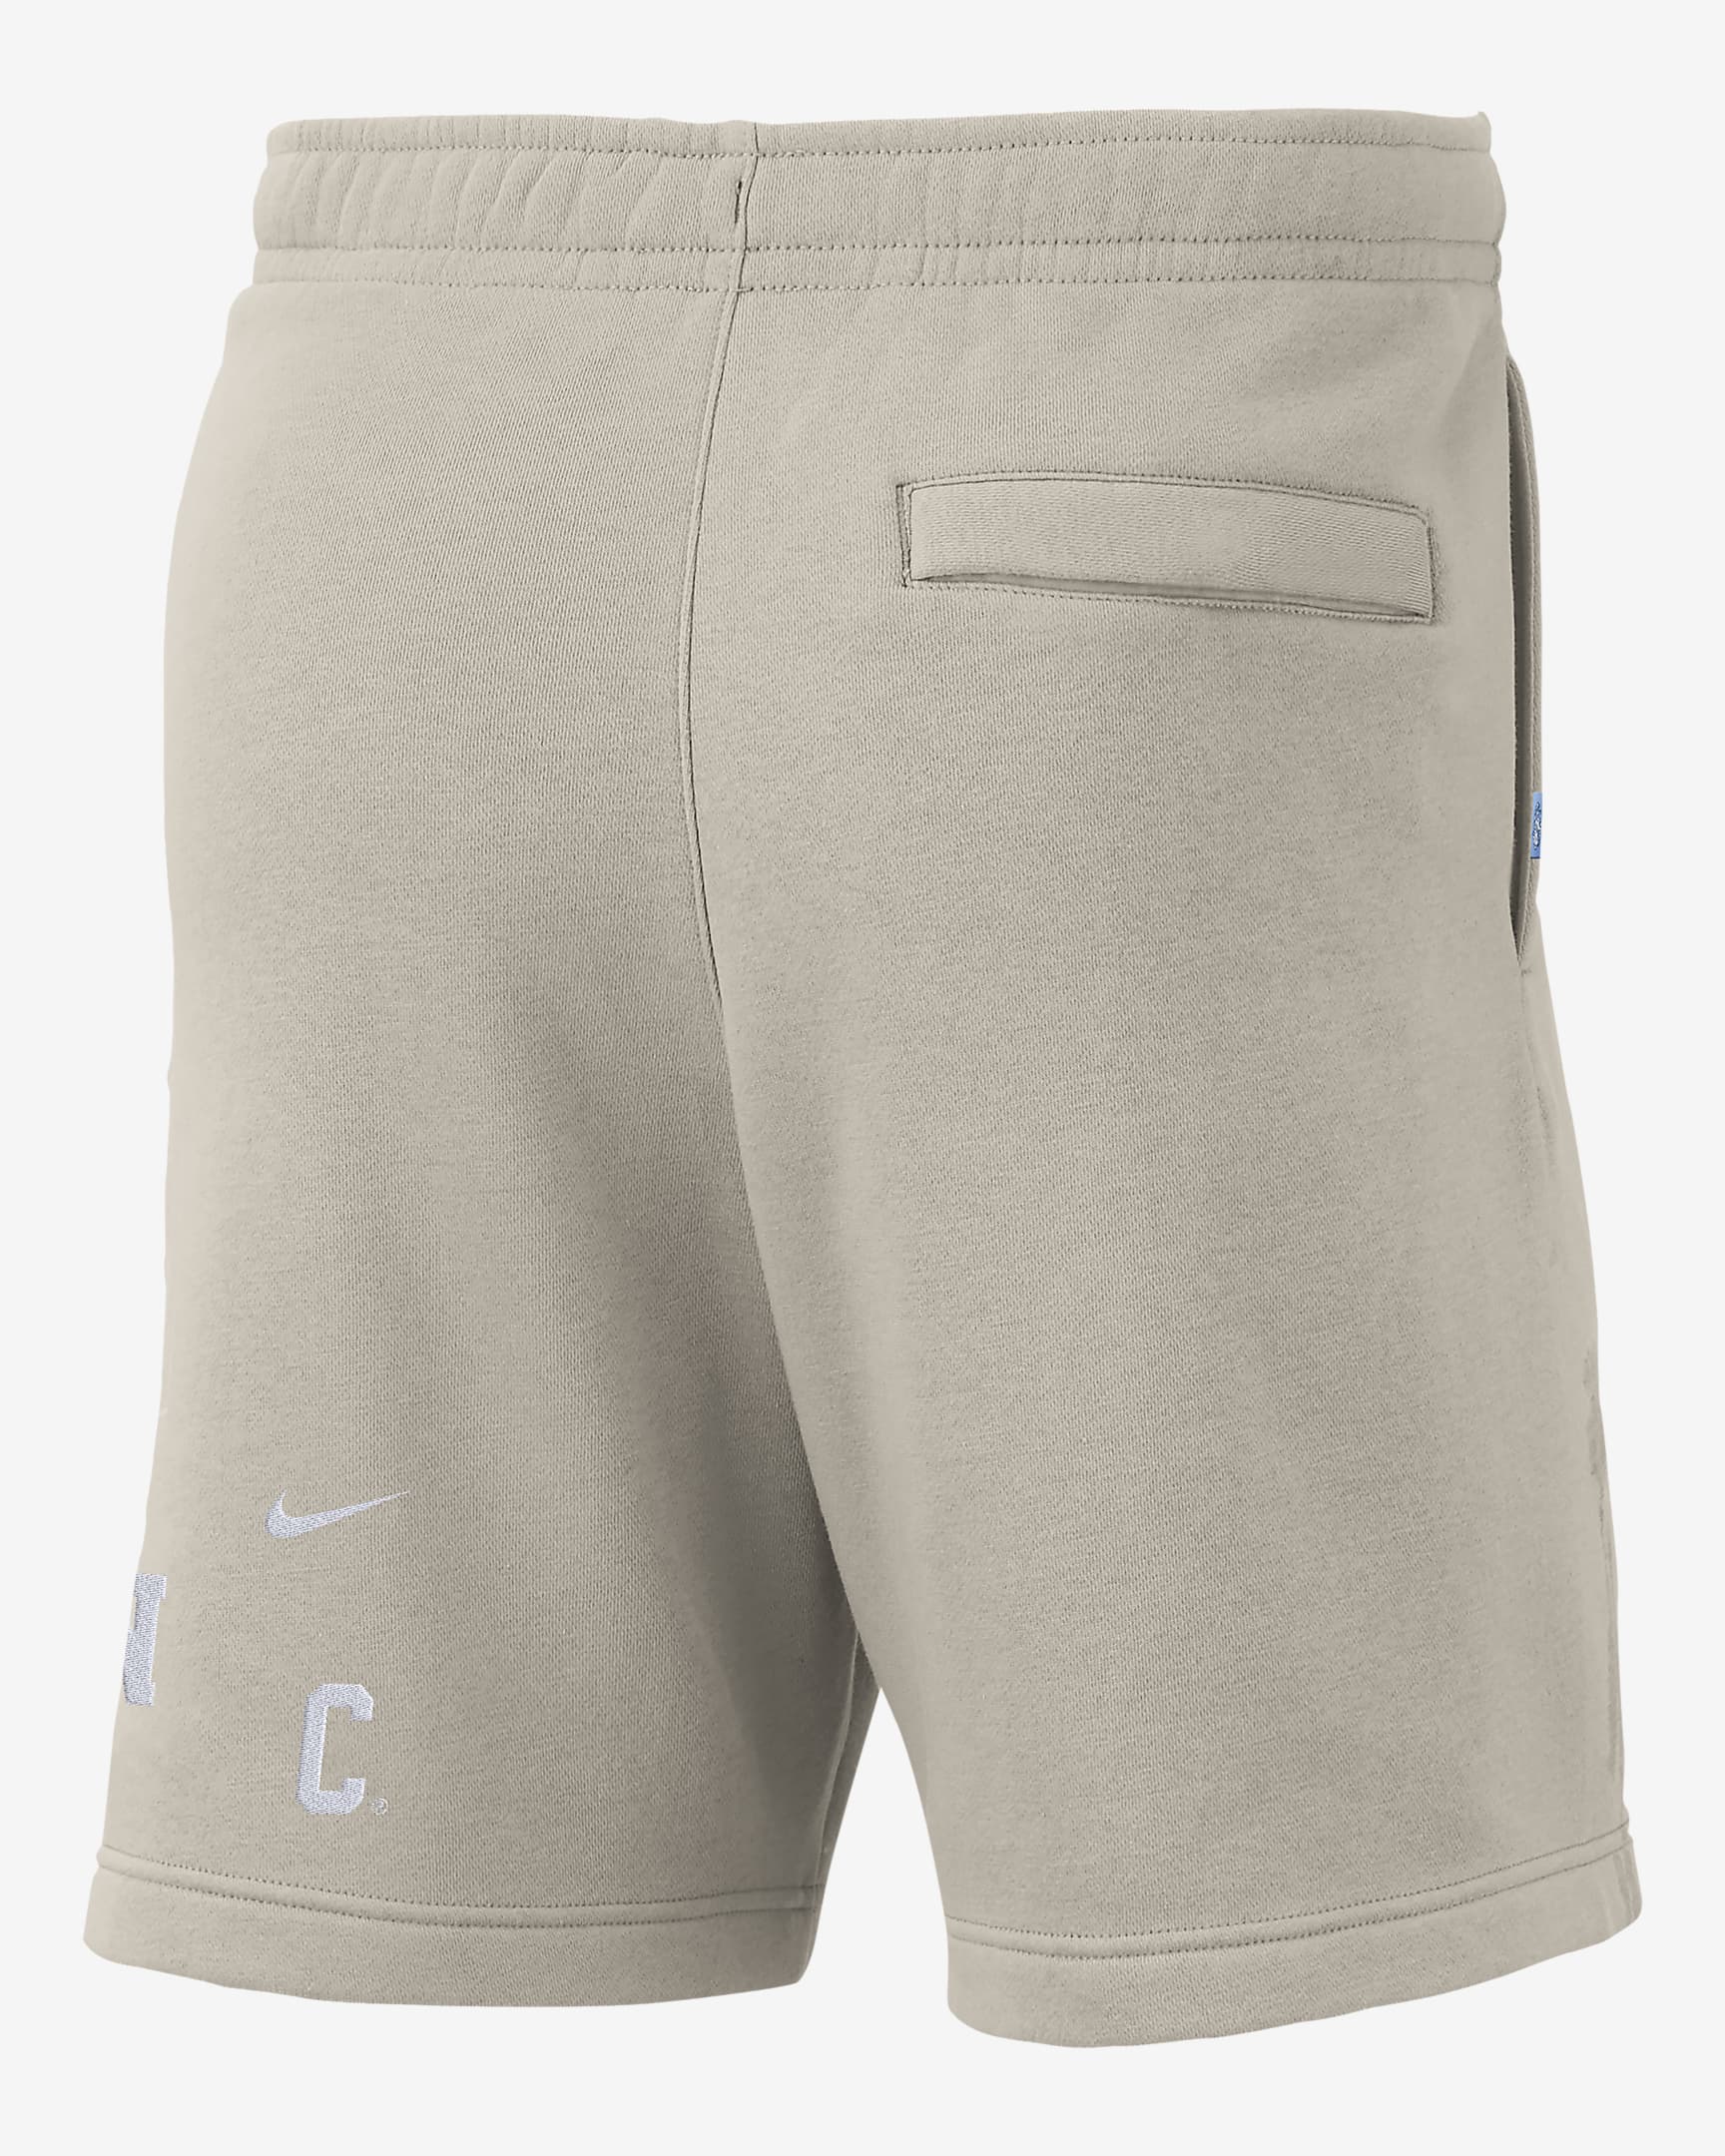 Shorts de tejido Fleece Nike College para hombre UNC. Nike.com